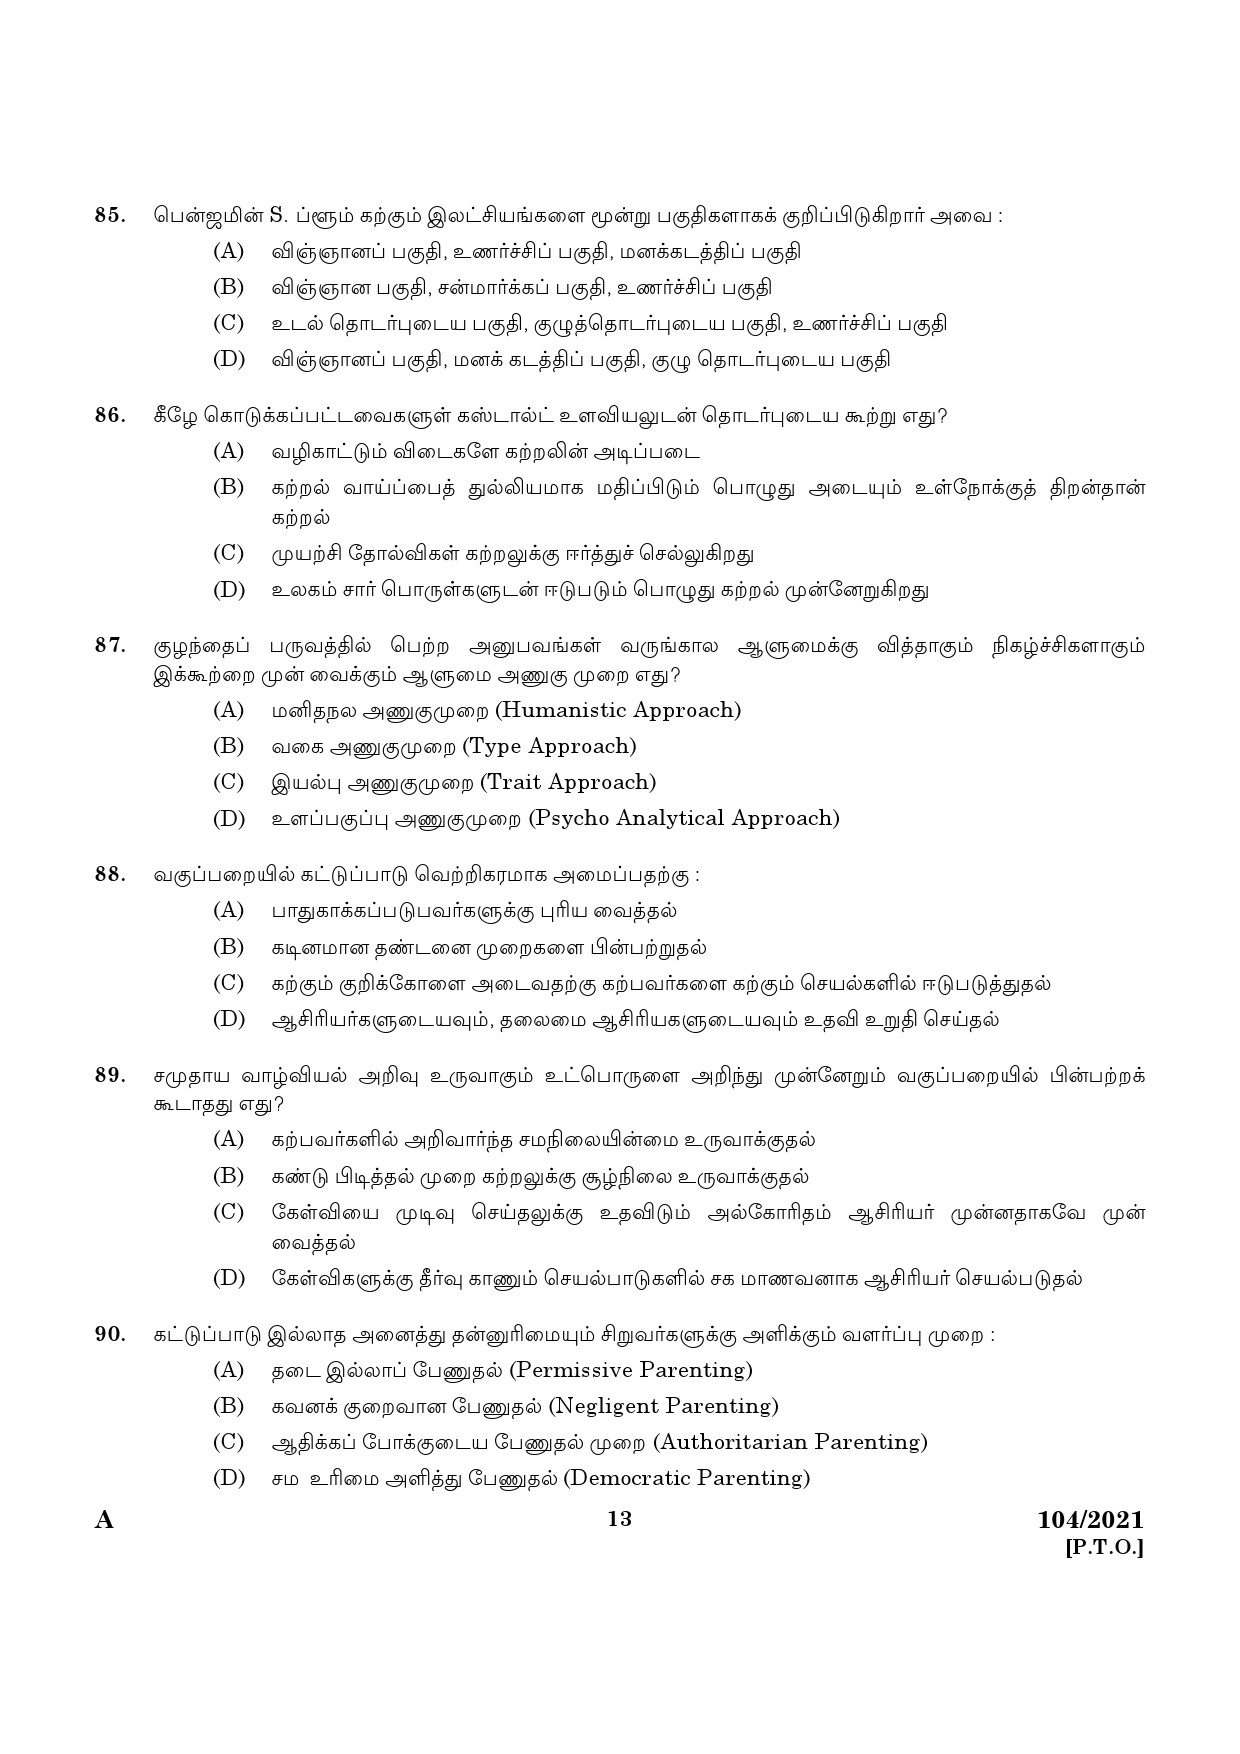 KPSC UP School Teacher Tamil Medium Exam 2021 Code 1042021 11